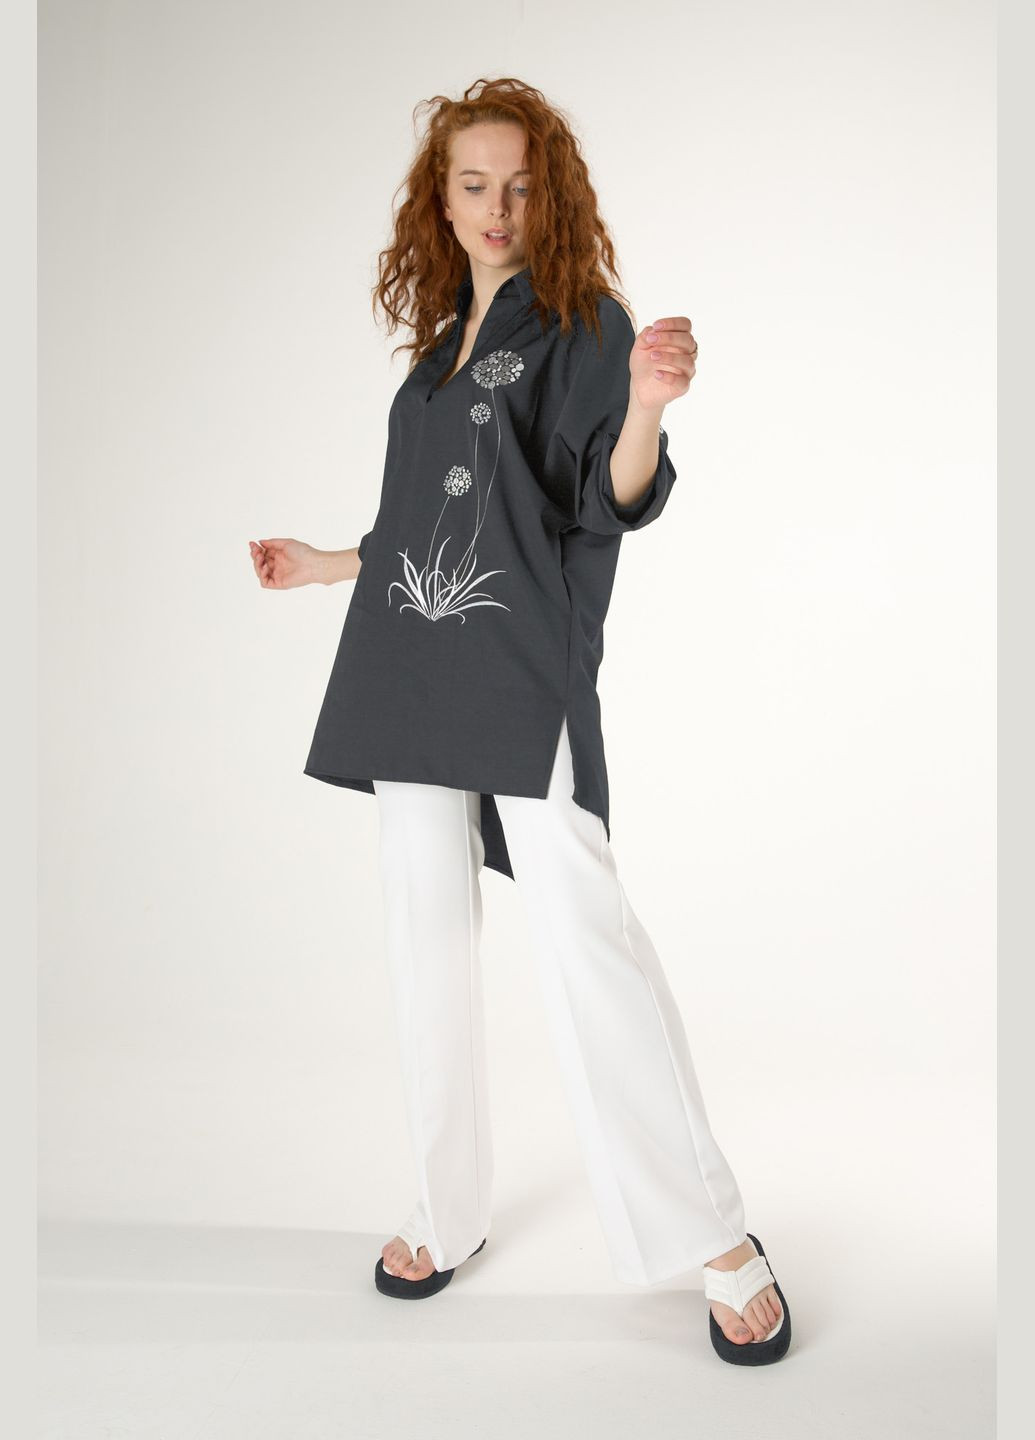 Серая демисезонная идеальная блуза-туника на каждый день с дизайнерской вышивкой INNOE Блуза-туніка